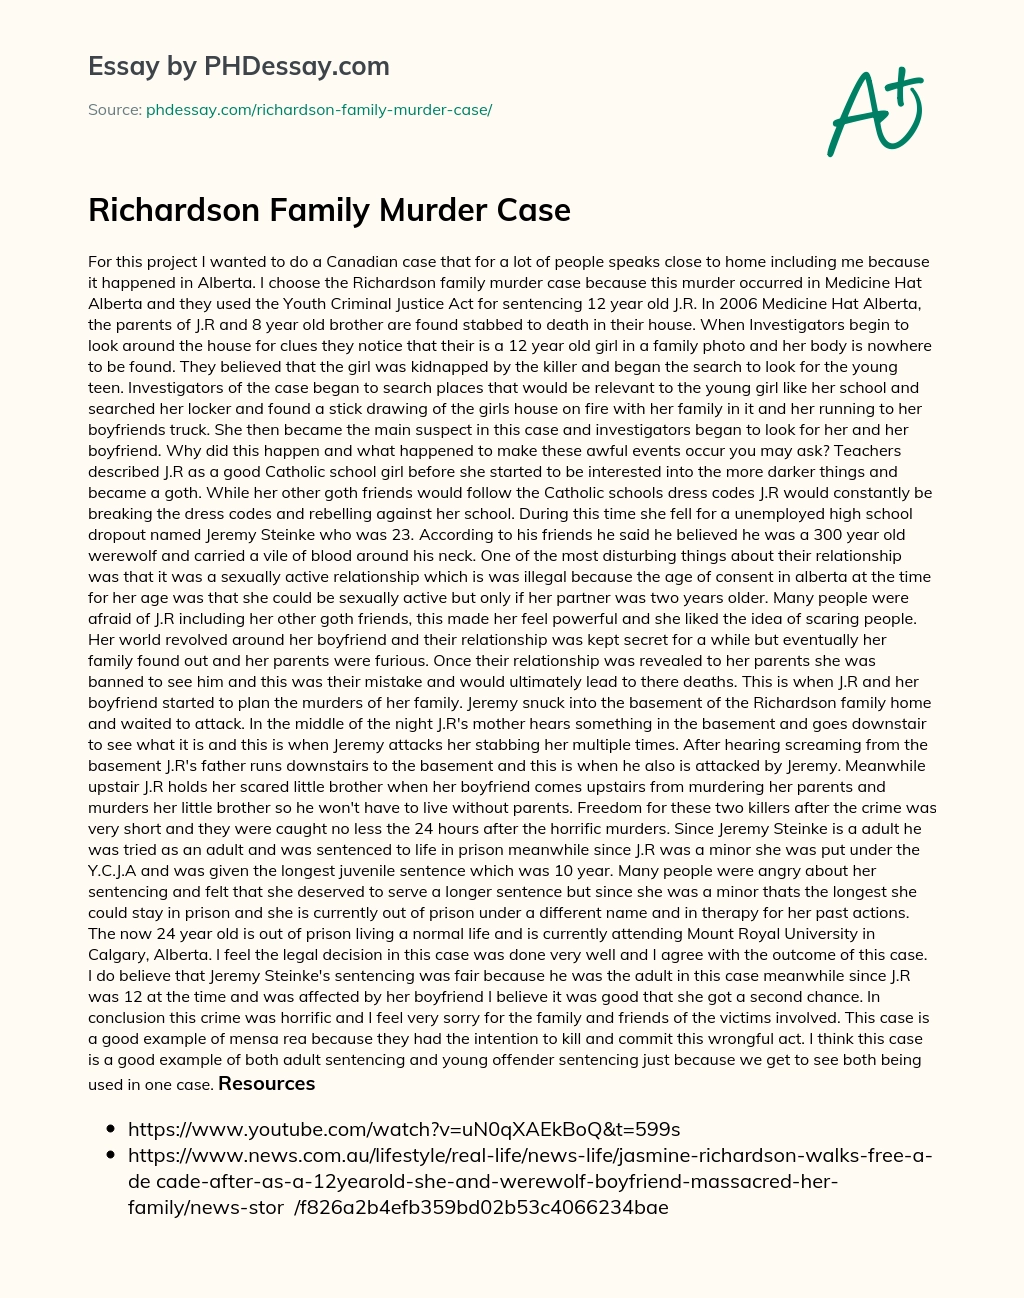 Richardson Family Murder Case essay